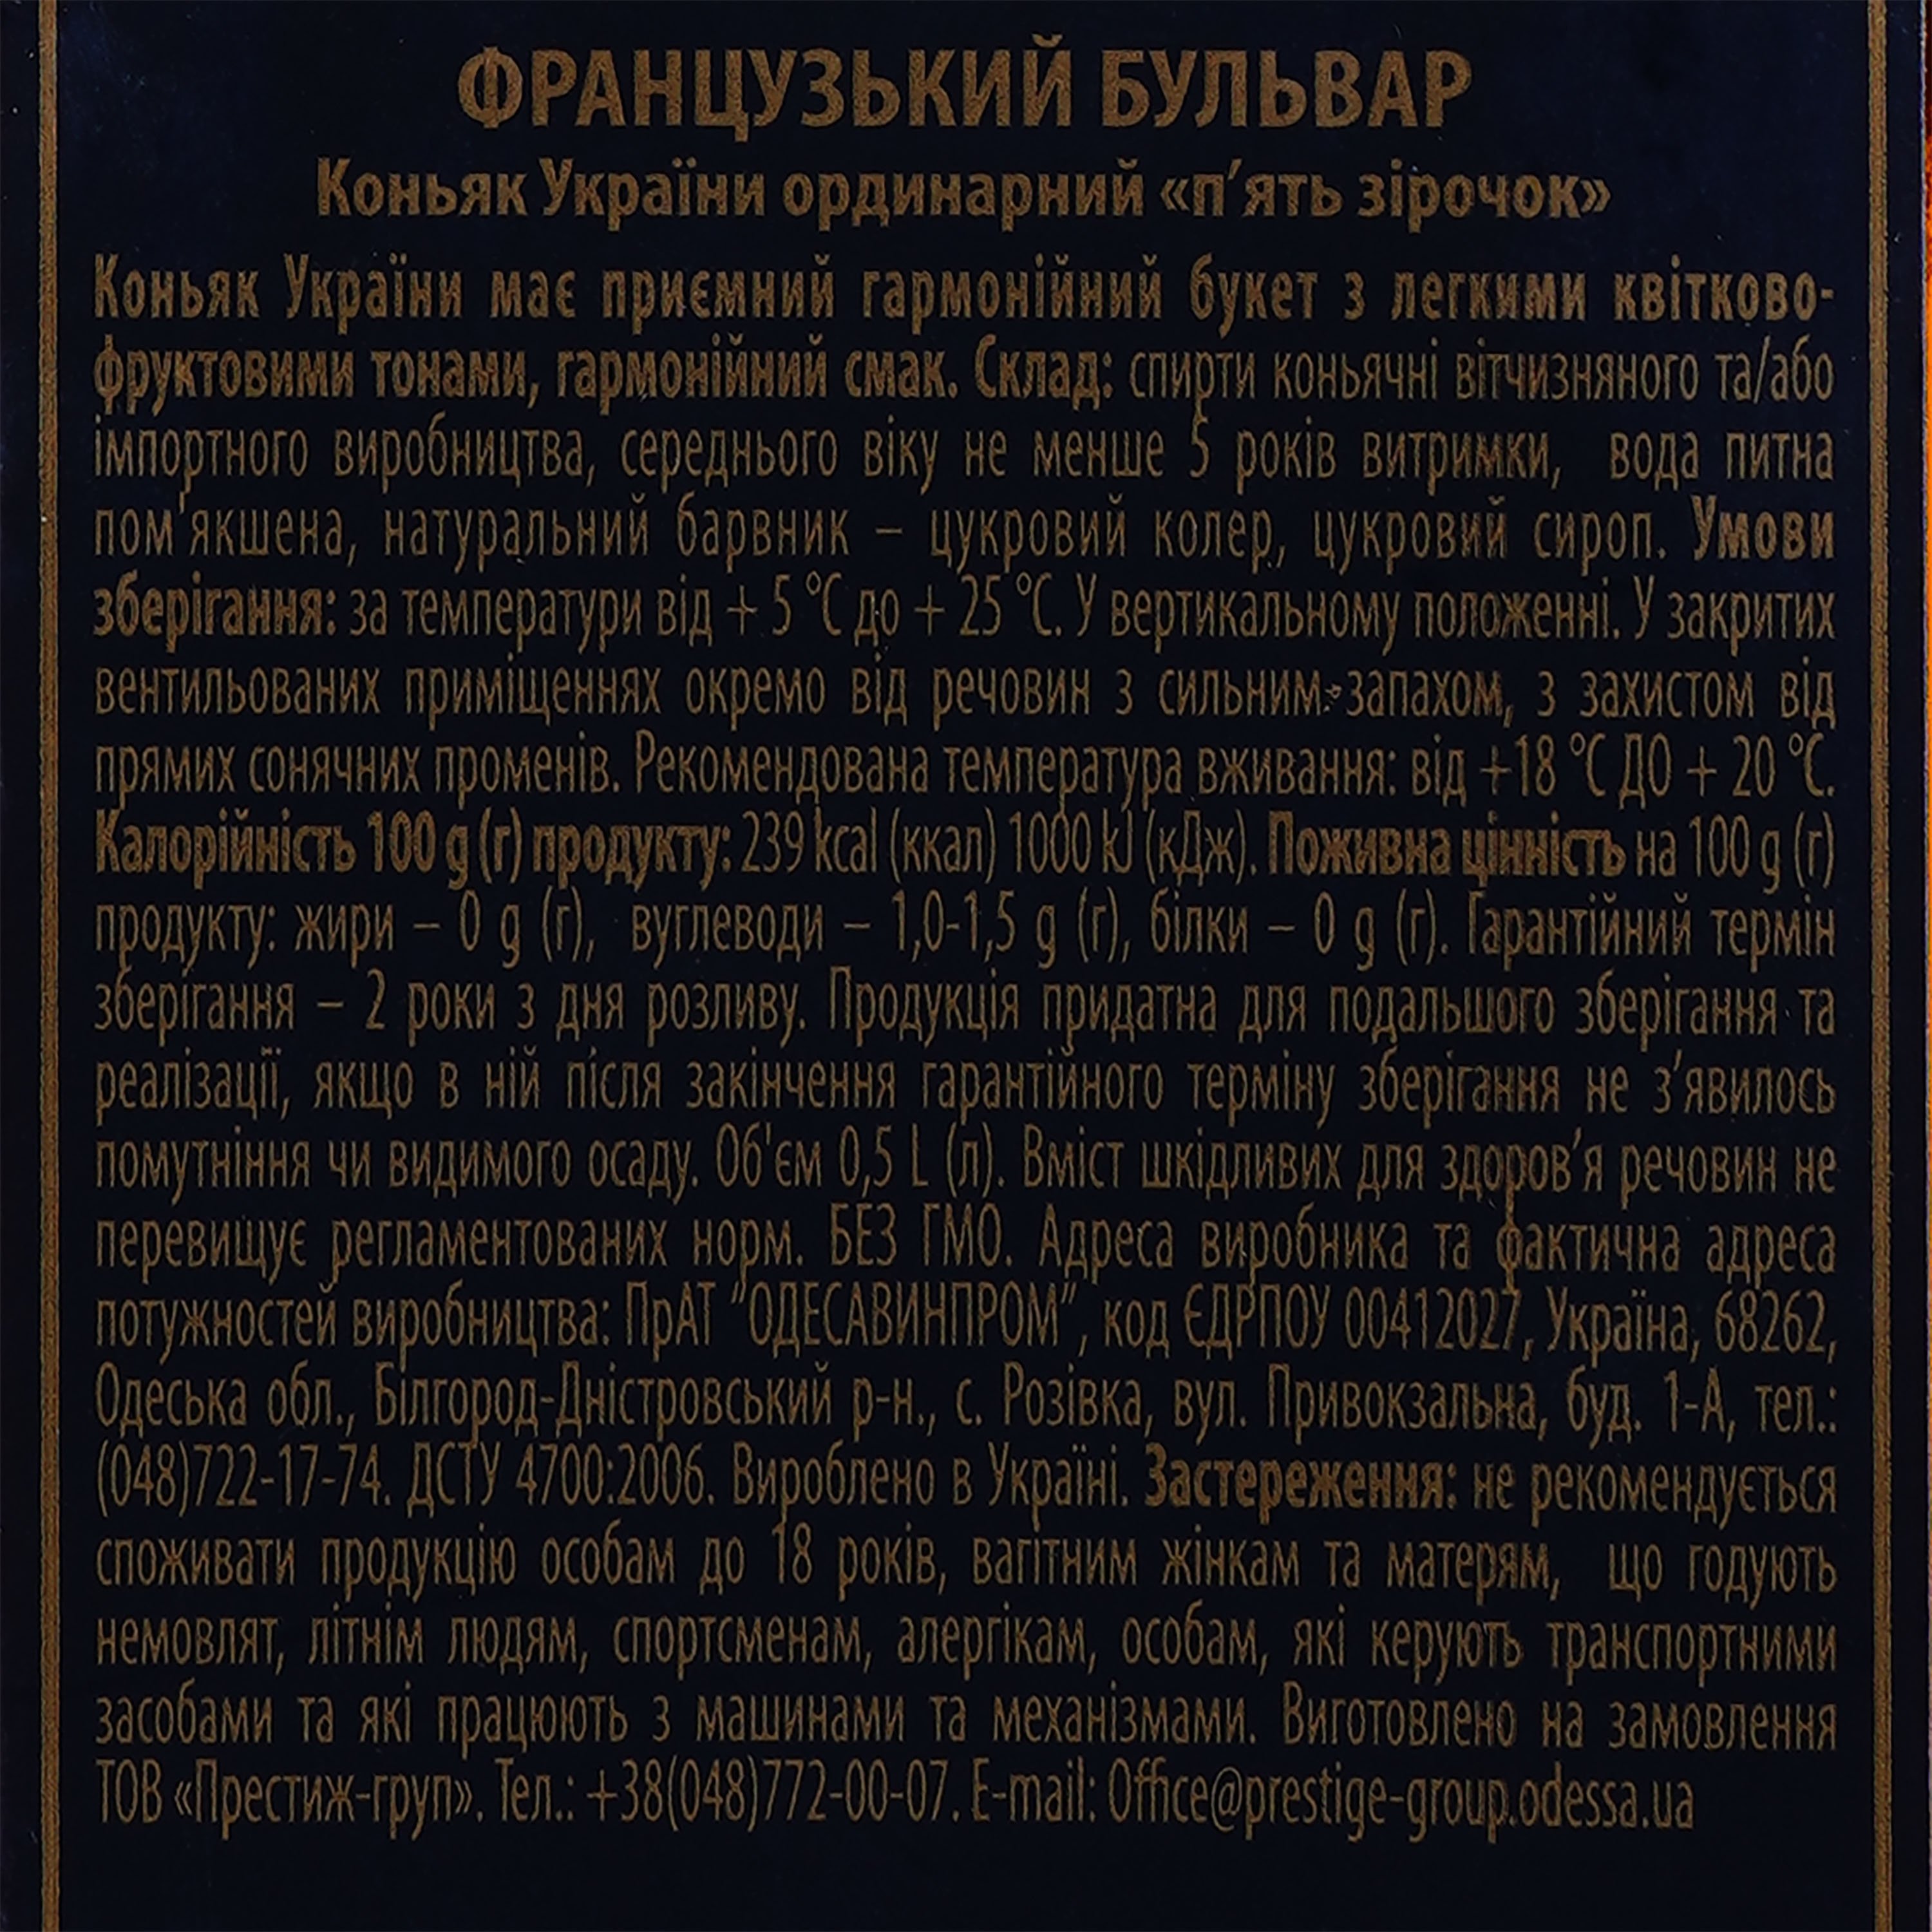 Коньяк Украины Французький Бульвар VVSOP 5 звезд, 40%, 0,5 л (867698) - фото 3